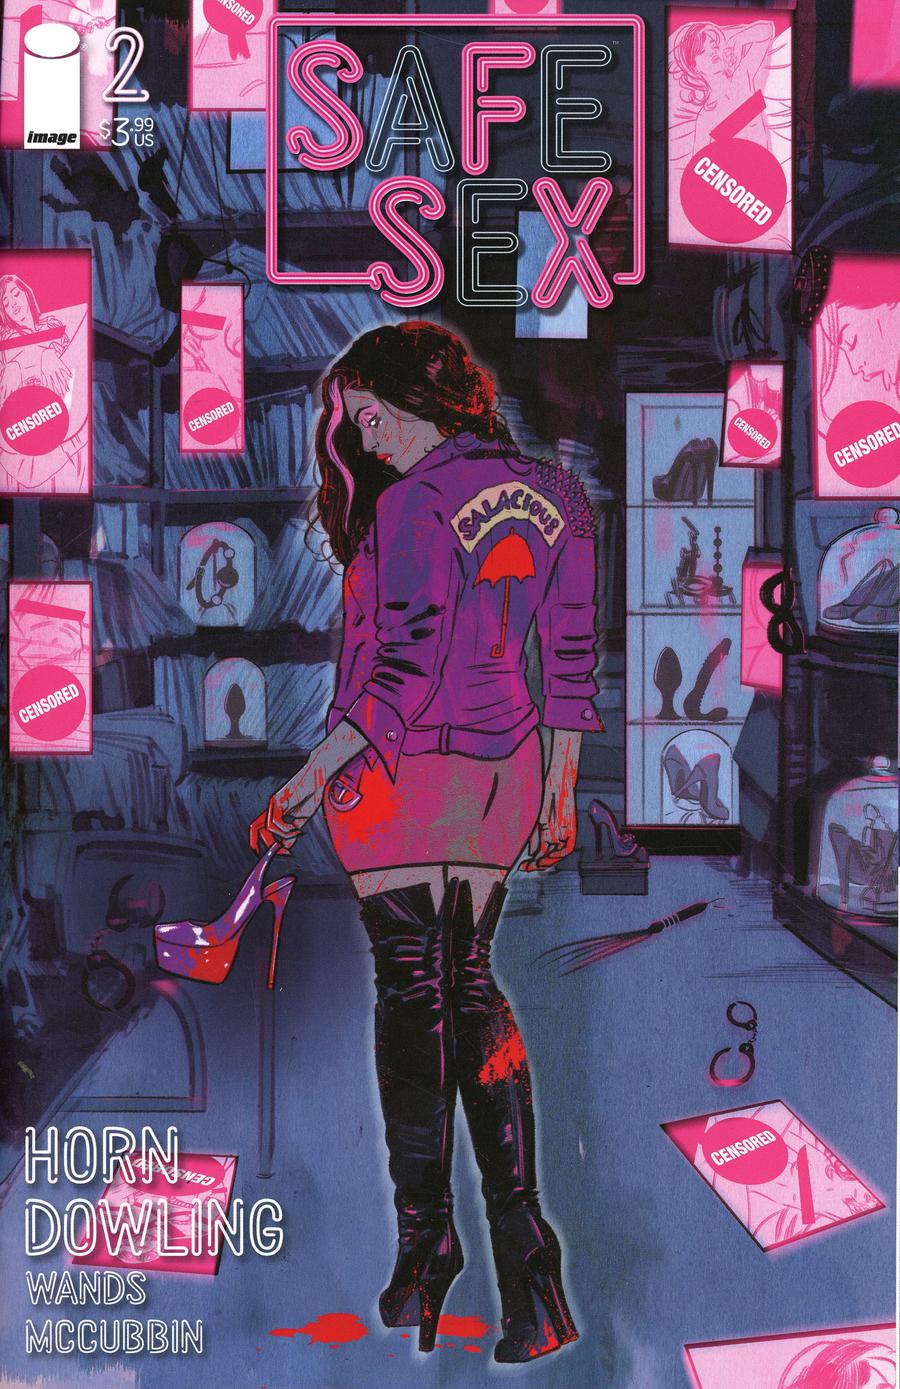 SFSX (Safe Sex) #2